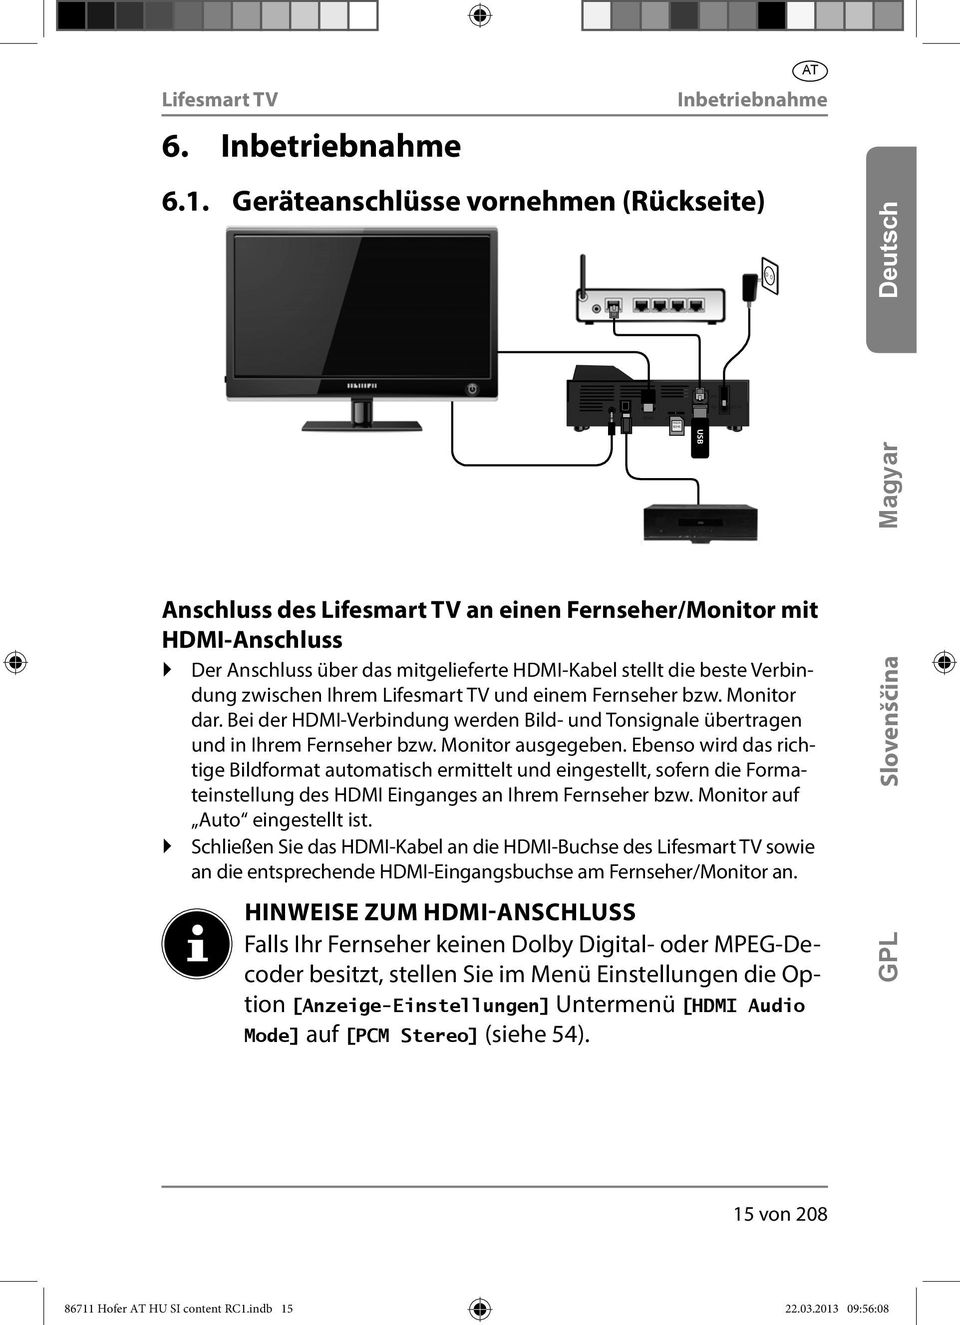 Ihrem und einem Fernseher bzw. Monitor dar. Bei der HDMI-Verbindung werden Bild- und Tonsignale übertragen und in Ihrem Fernseher bzw. Monitor ausgegeben.